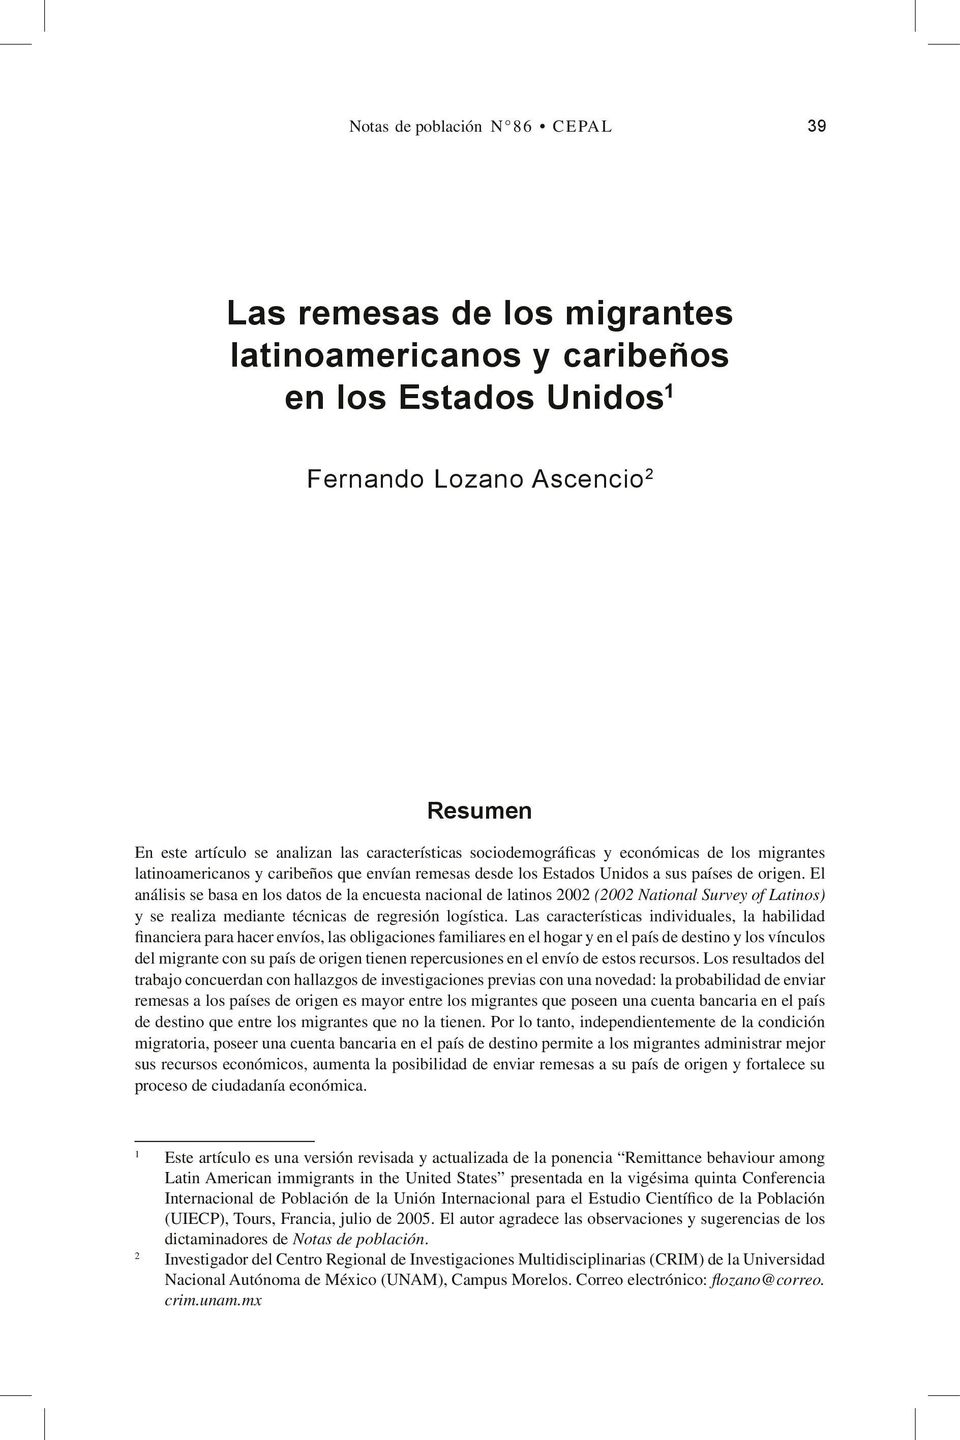 Fernando Lozano Ascencio 2 Resumen (2002 National